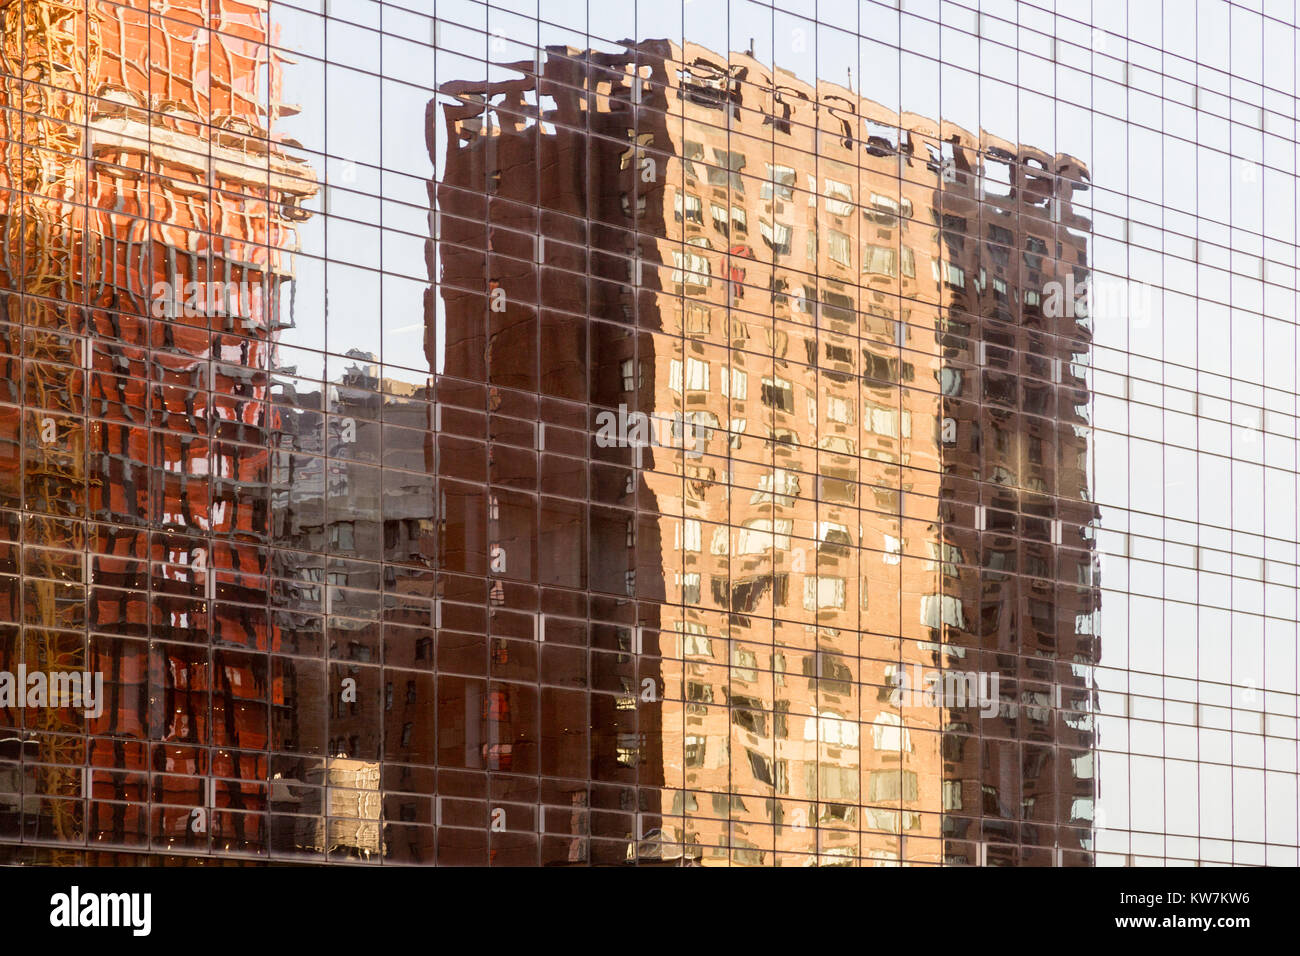 La réflexion des bâtiments dans le verre d'un autre immeuble à new york city Banque D'Images